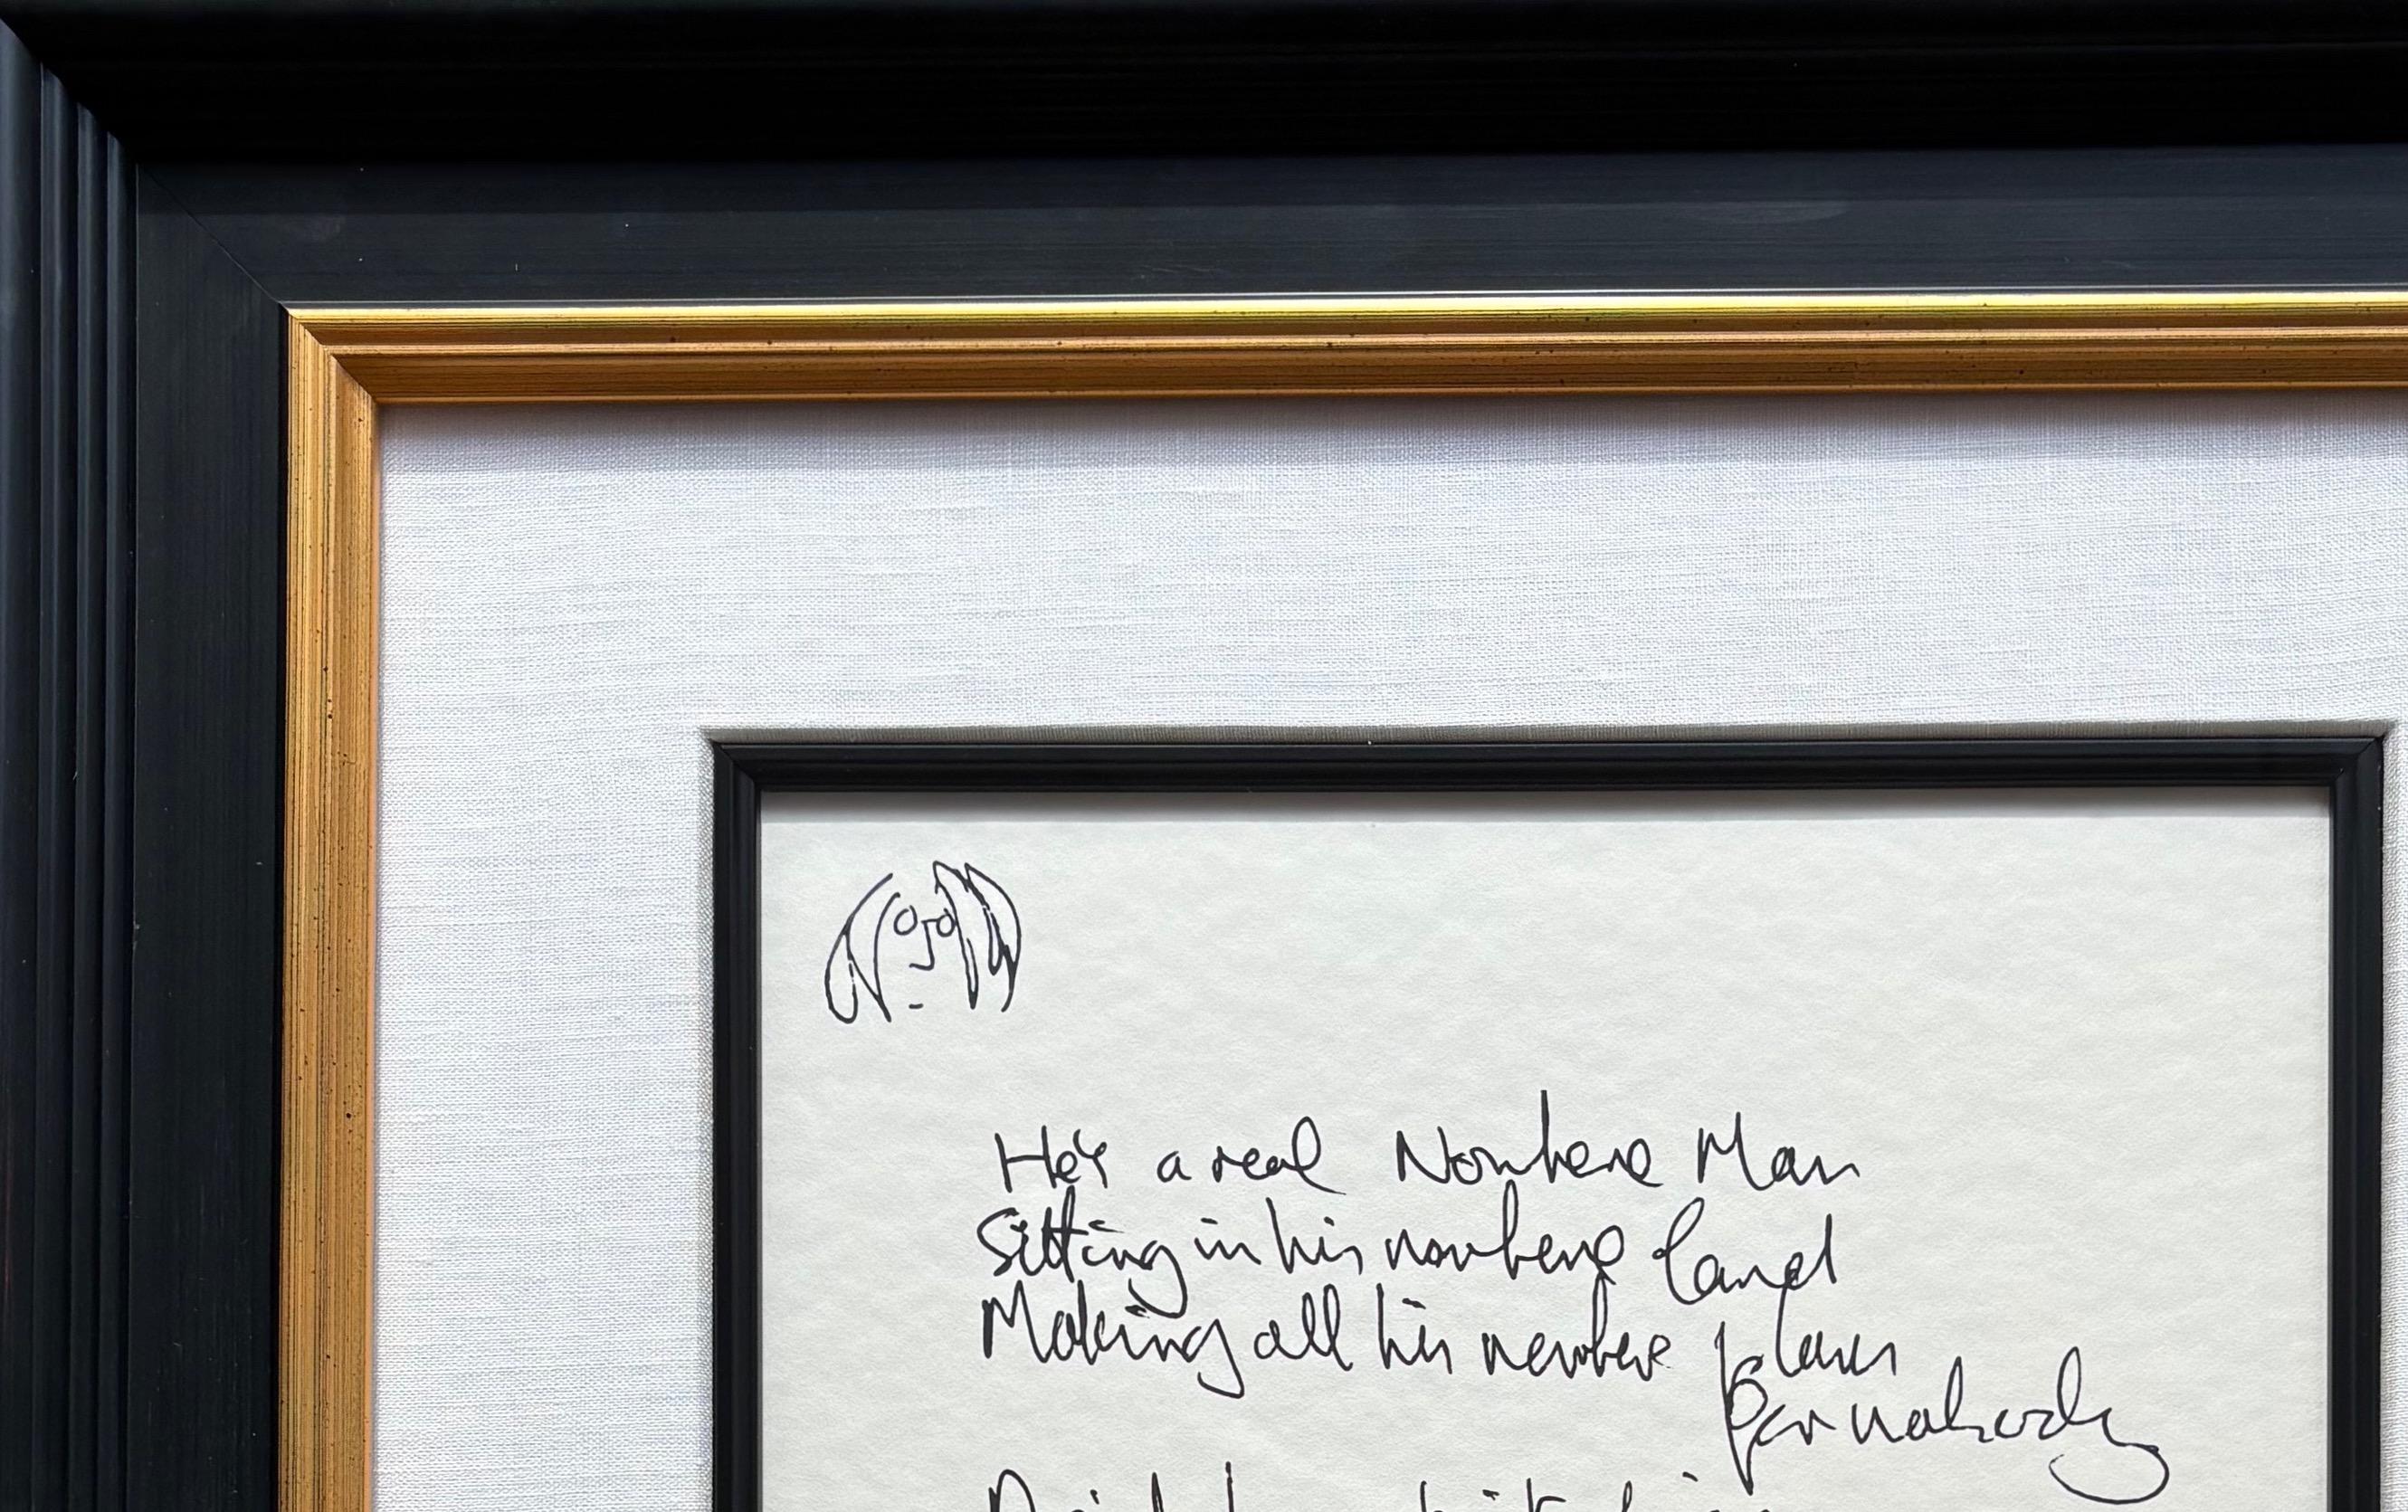  Seltene Serigraphie in limitierter Auflage von John Lennons handgeschriebenem Text für den Song 